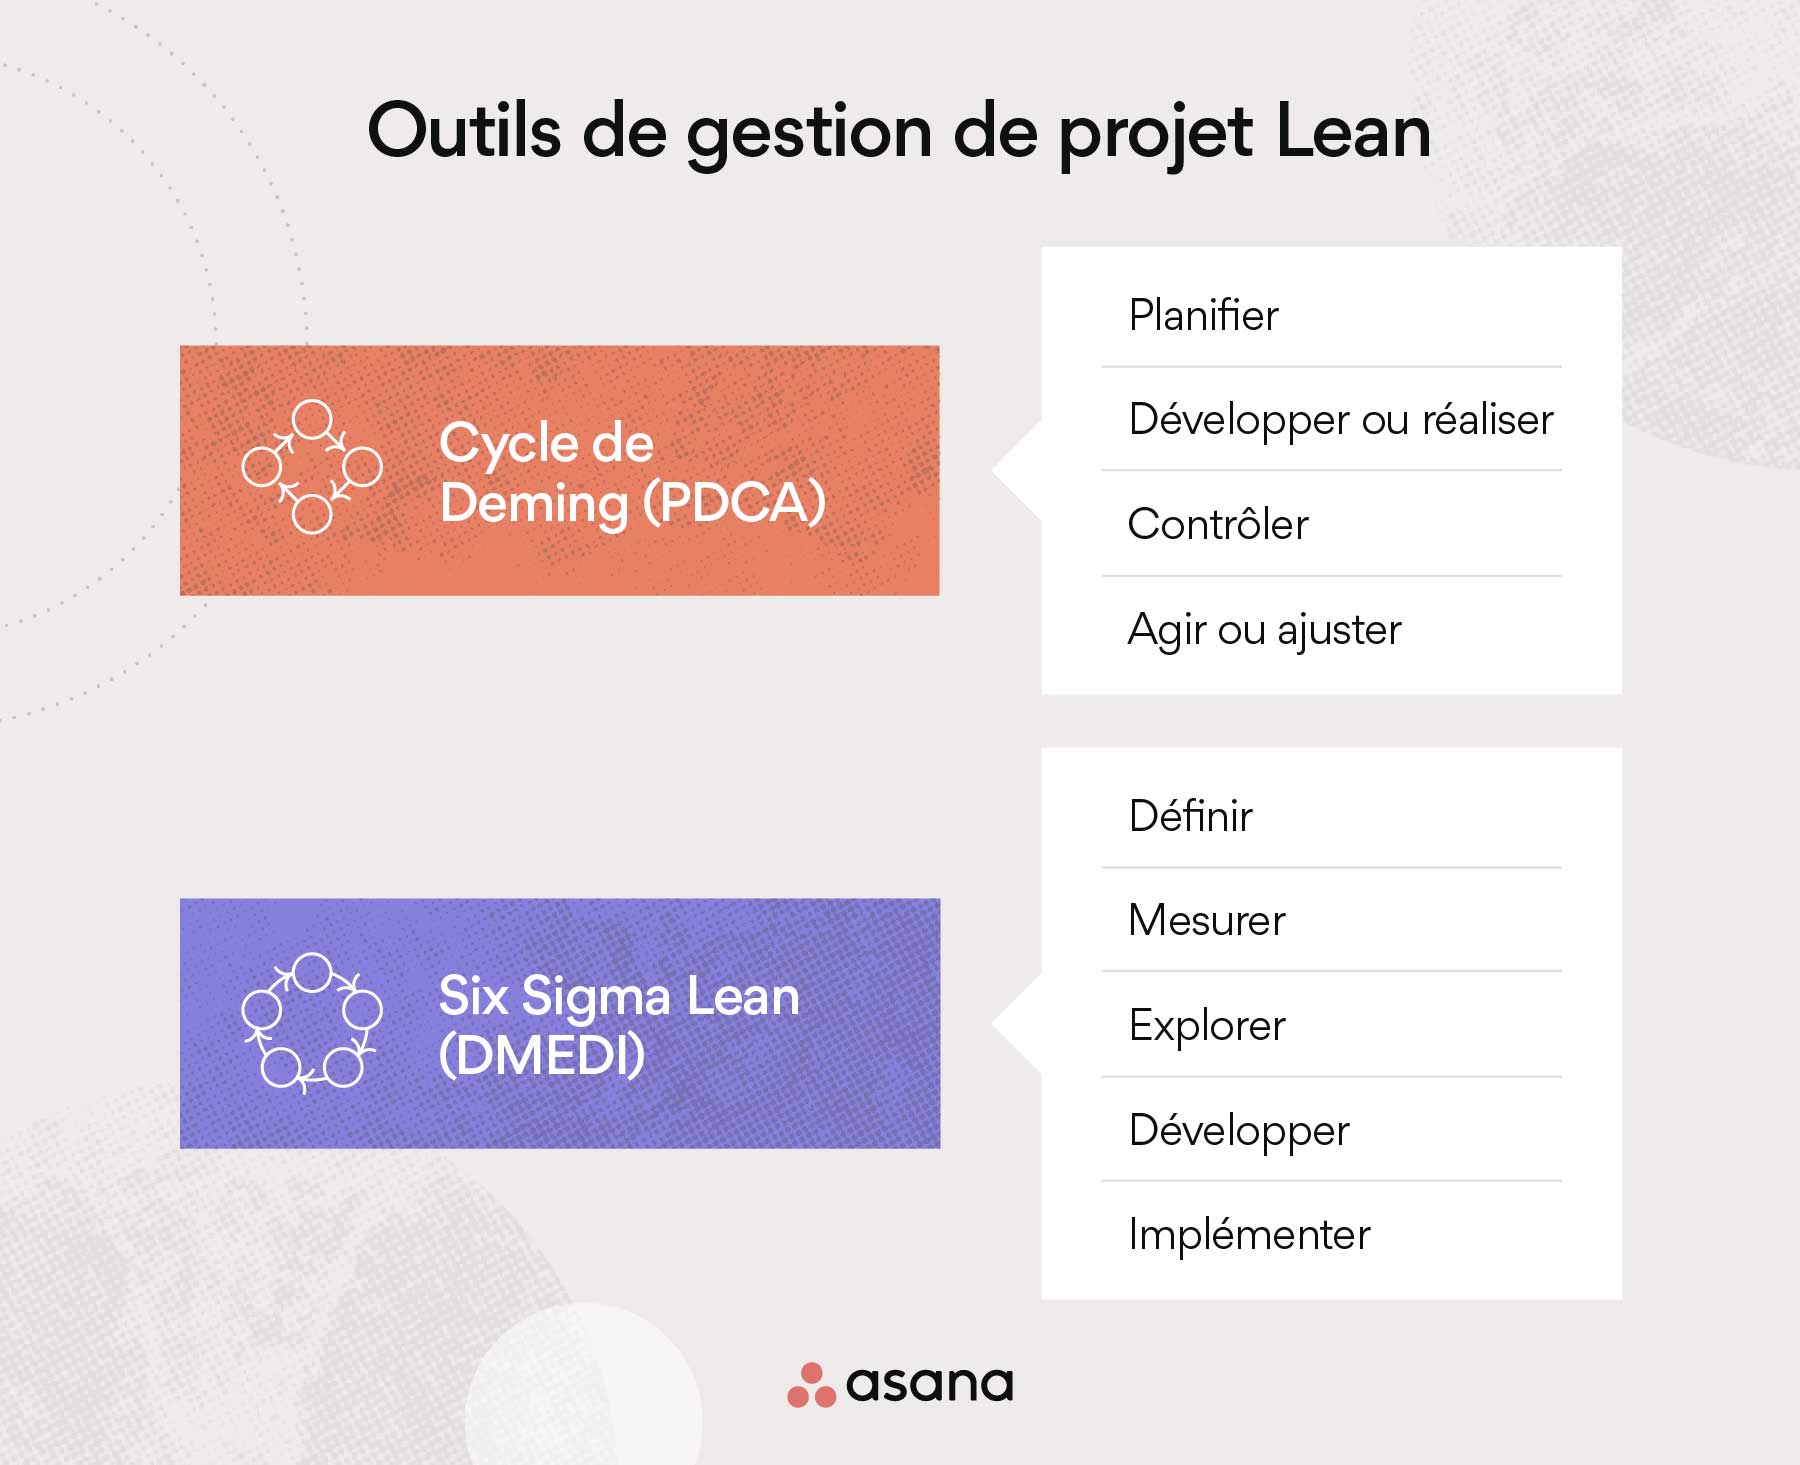 Les outils de la gestion de projet Lean